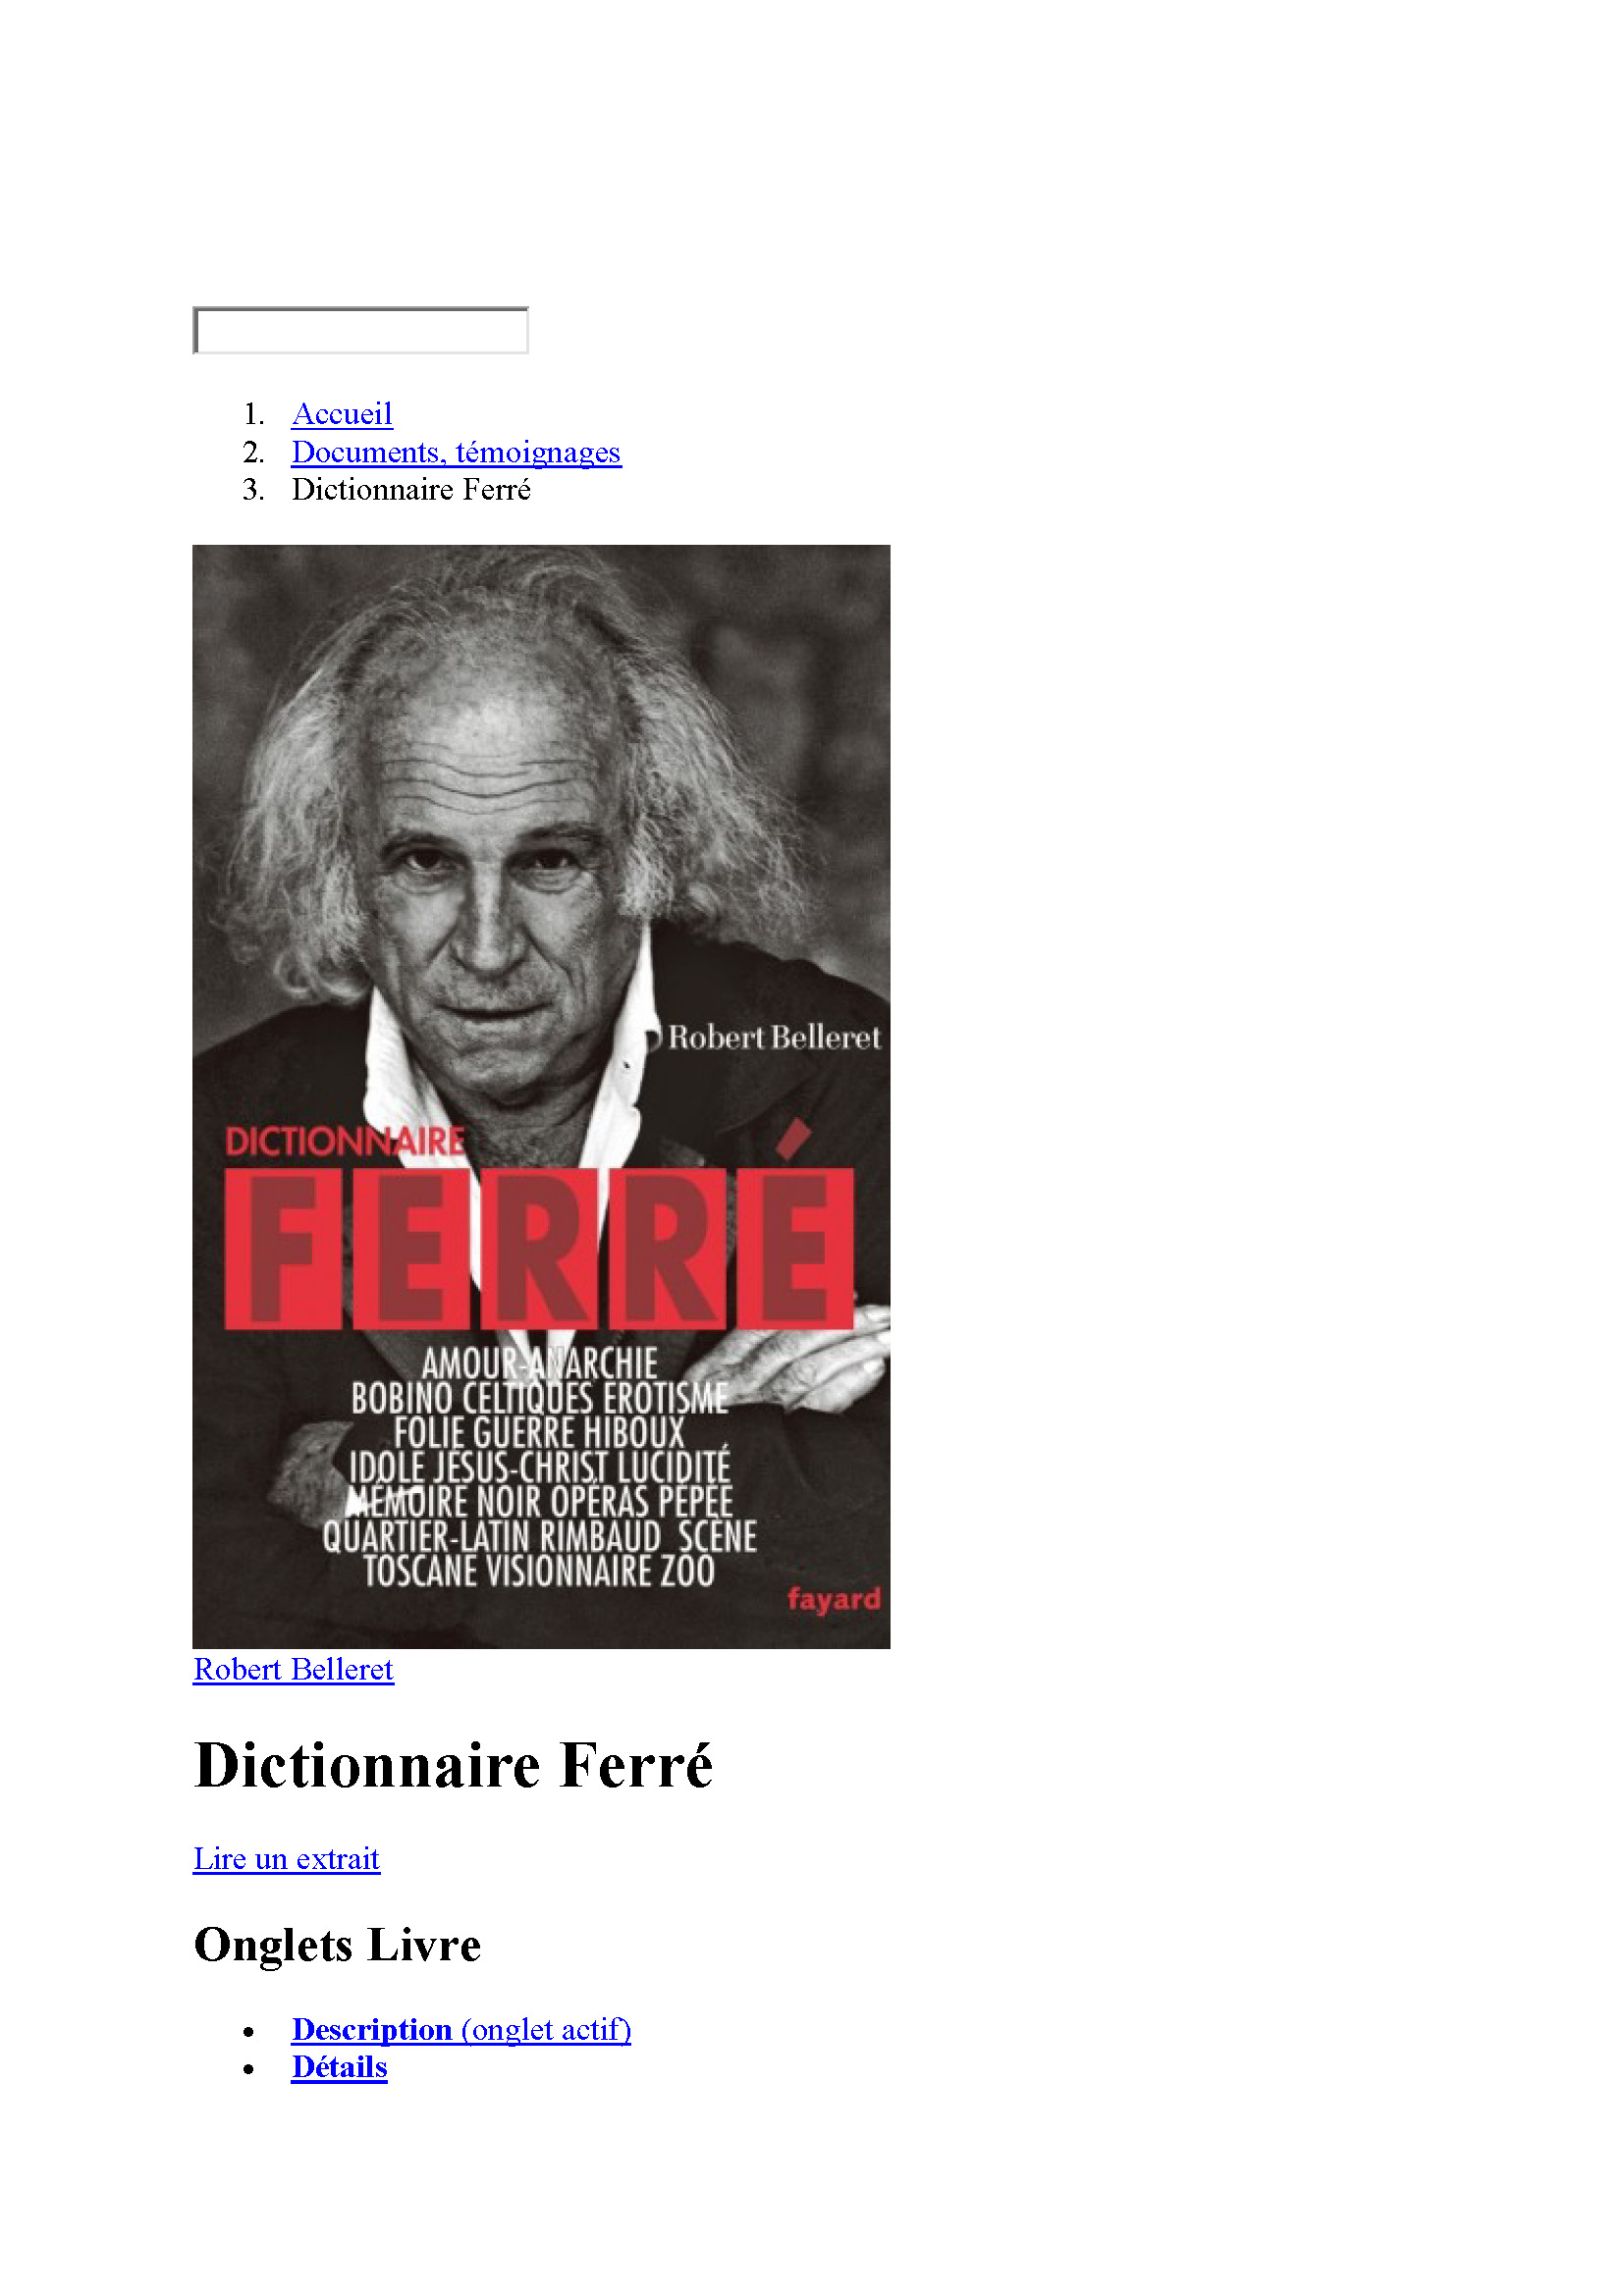 20/01/2013 Dictionnaire Ferré par Robert Belleret